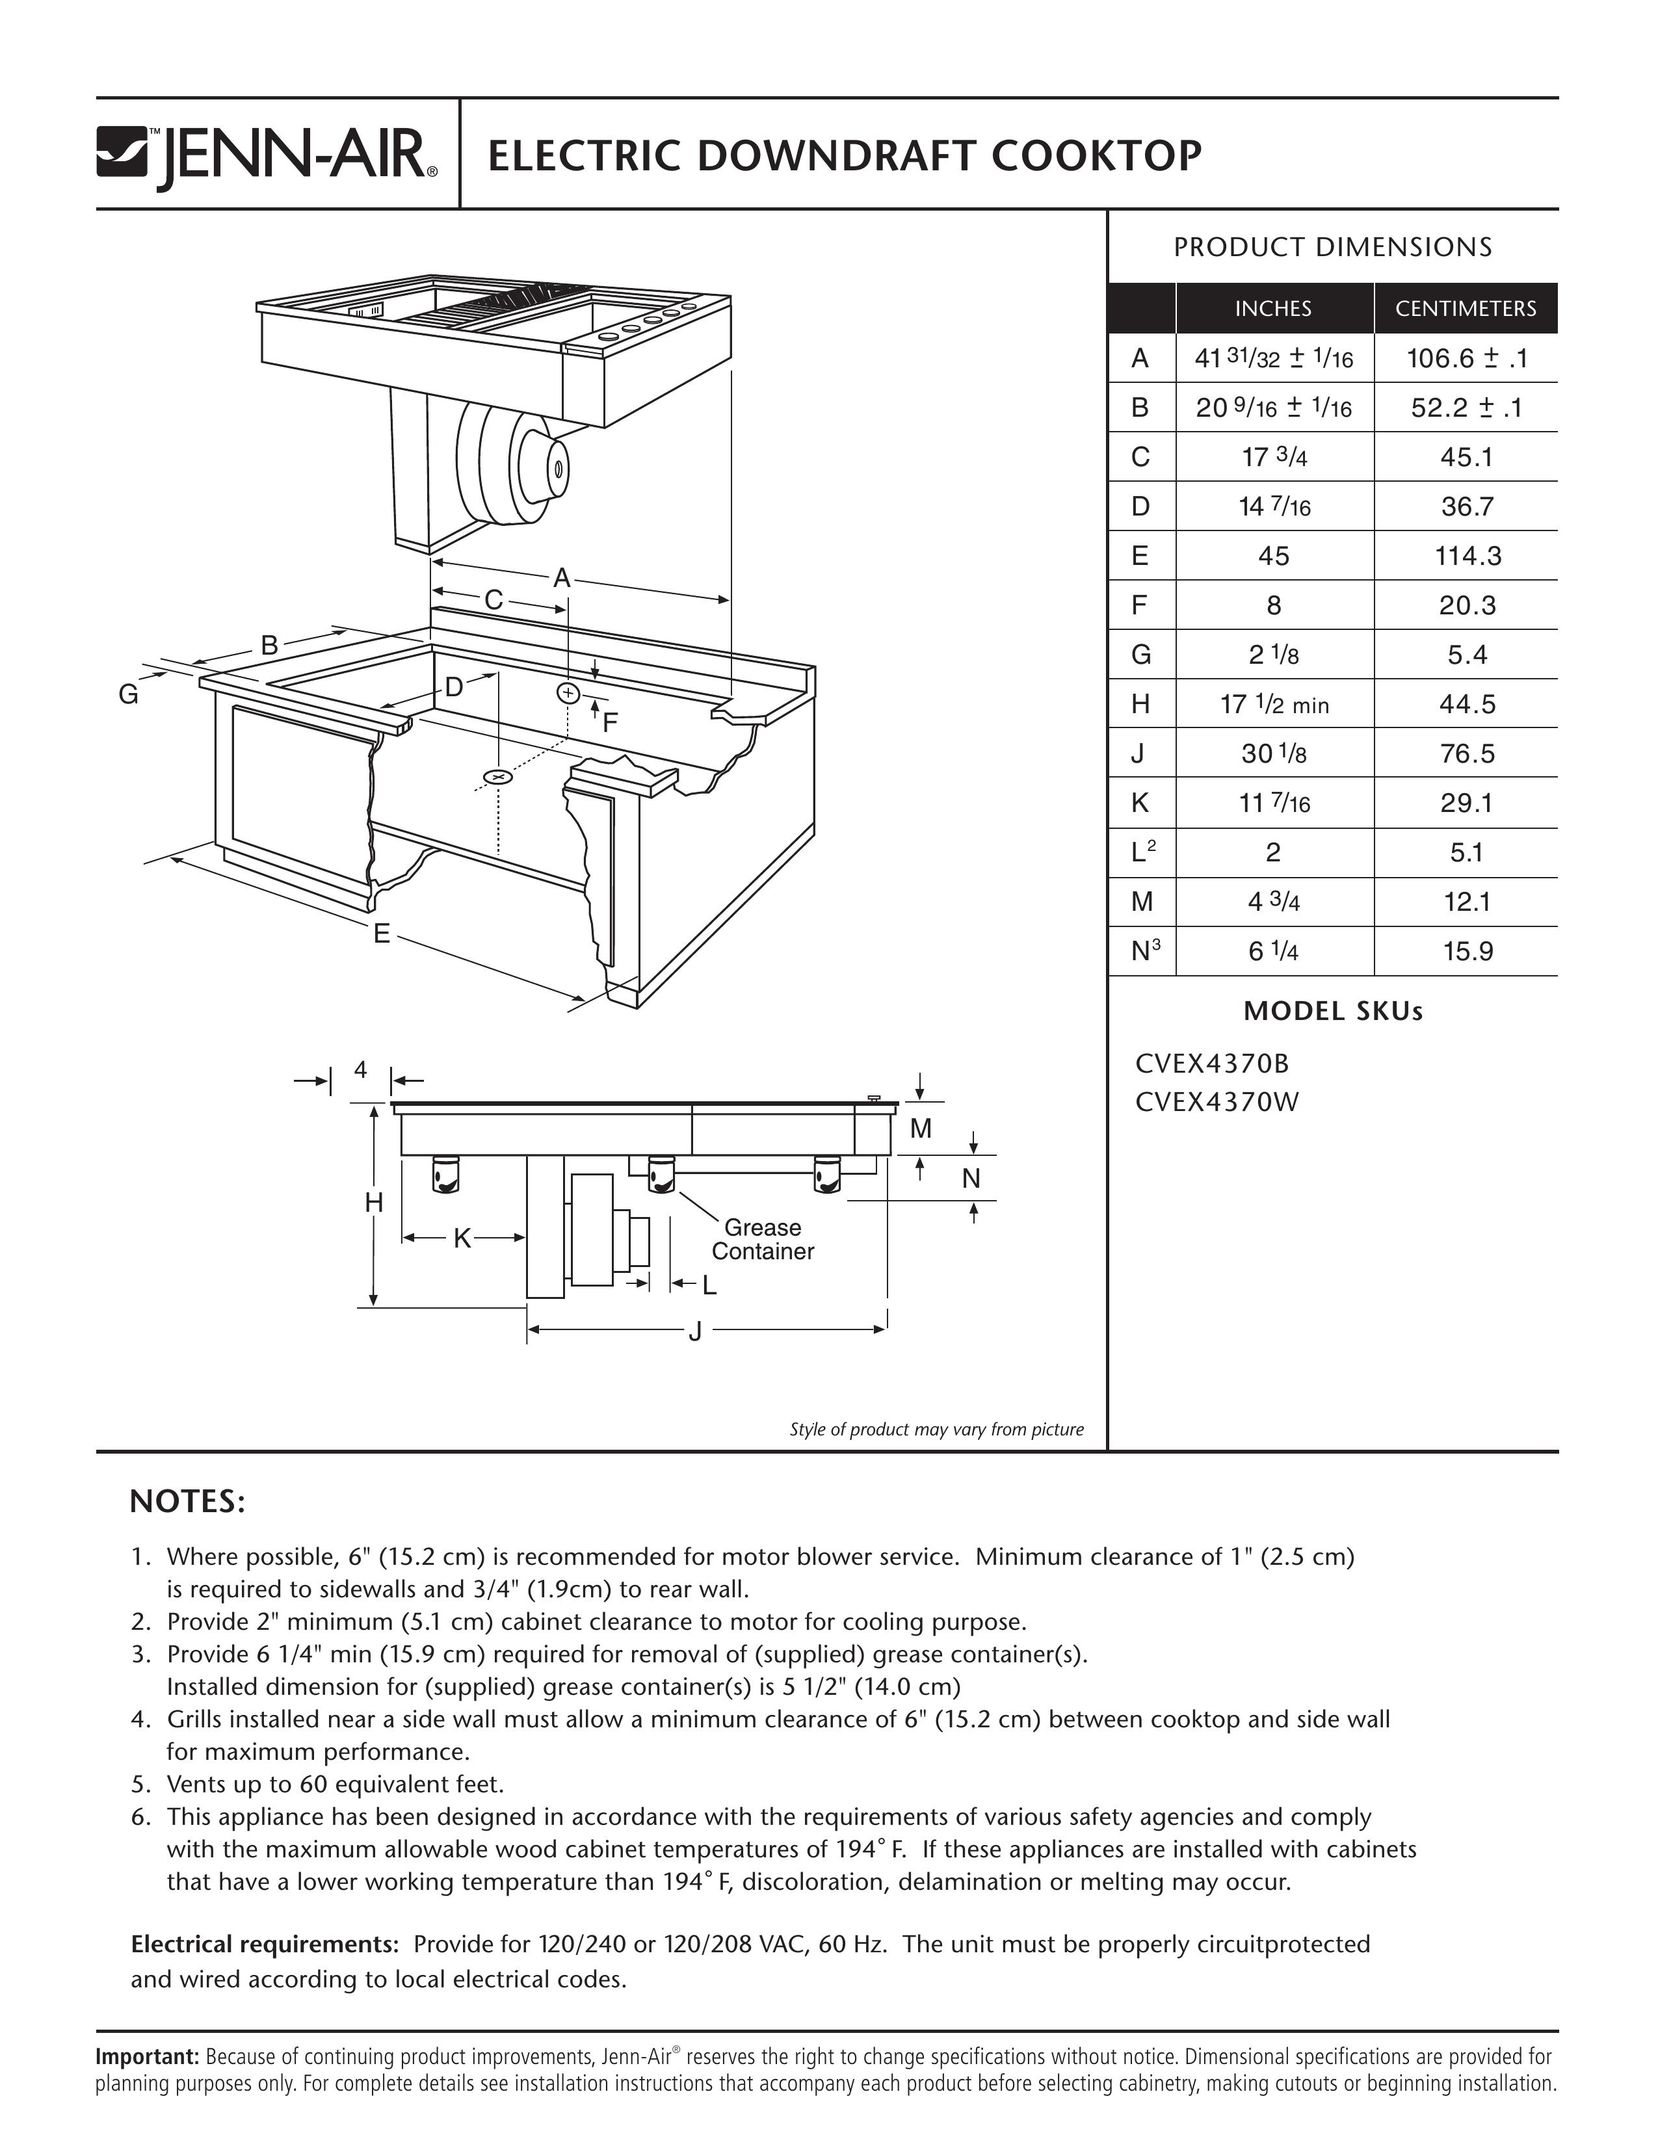 Jenn-Air CVEX4370W Cooktop User Manual